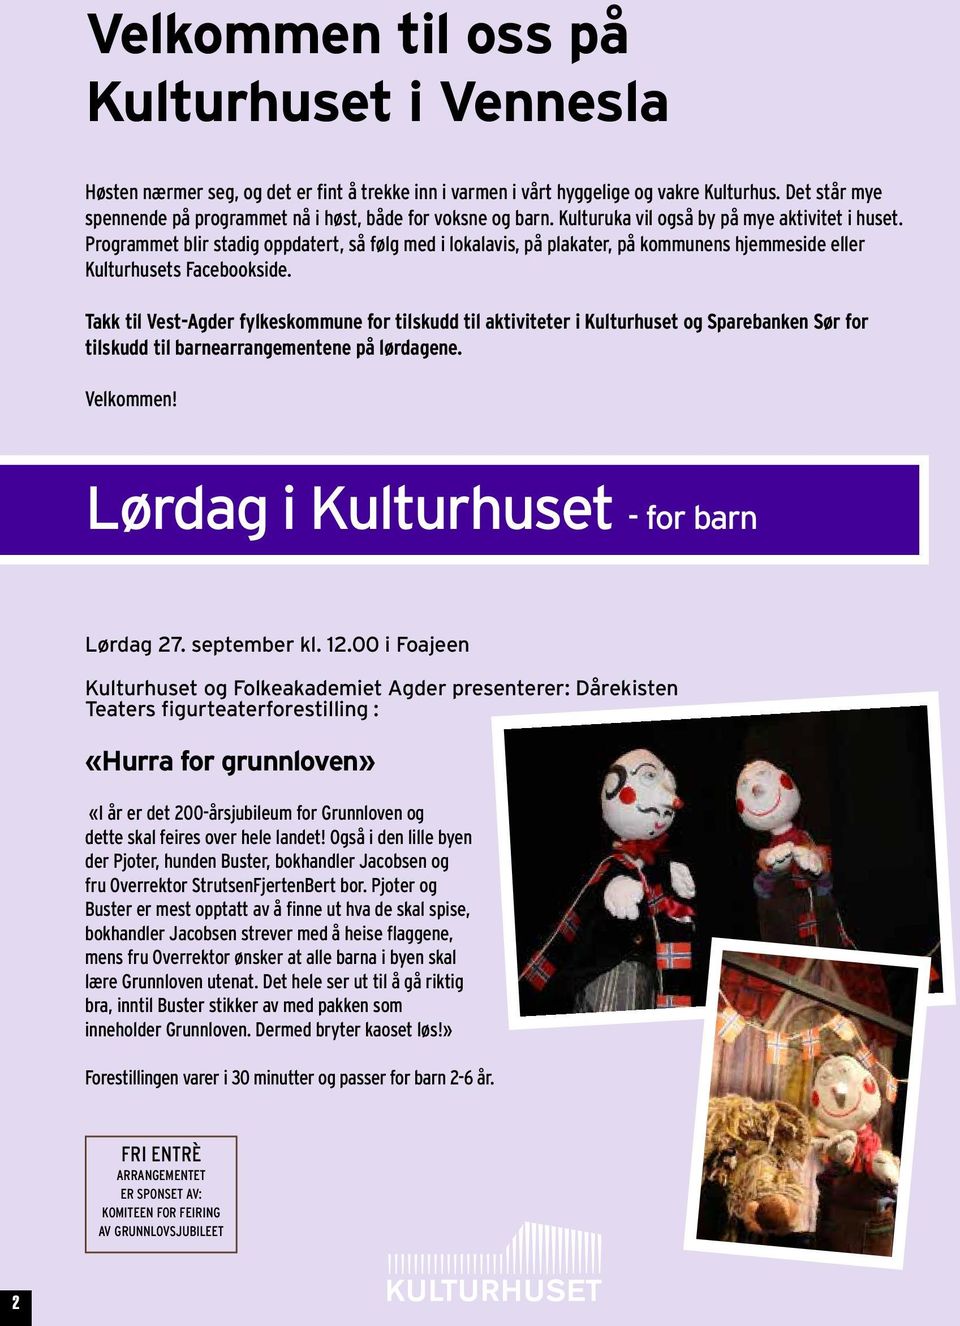 Programmet blir stadig oppdatert, så følg med i lokalavis, på plakater, på kommunens hjemmeside eller Kulturhusets Facebookside.